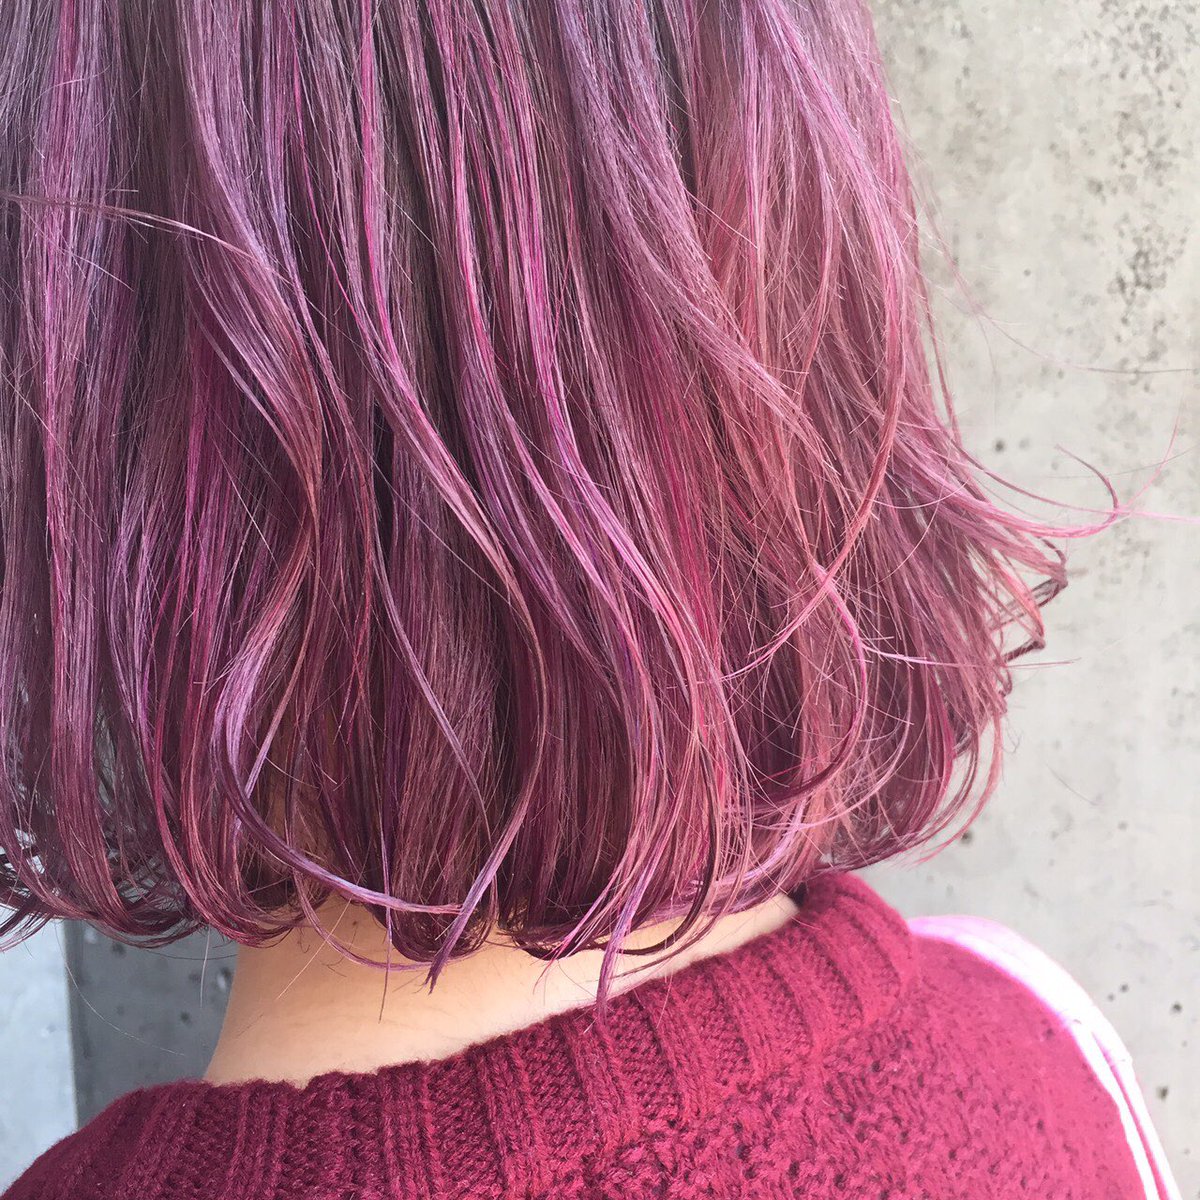 希亜羅 ティア 染めてきたやつ ピンク濃いピンク紫ではじめてイルミナカラーやった 光に当たるとかわいい 前髪ぱっつんにした イルミナカラー ピンク 紫 髪色 Hair Color